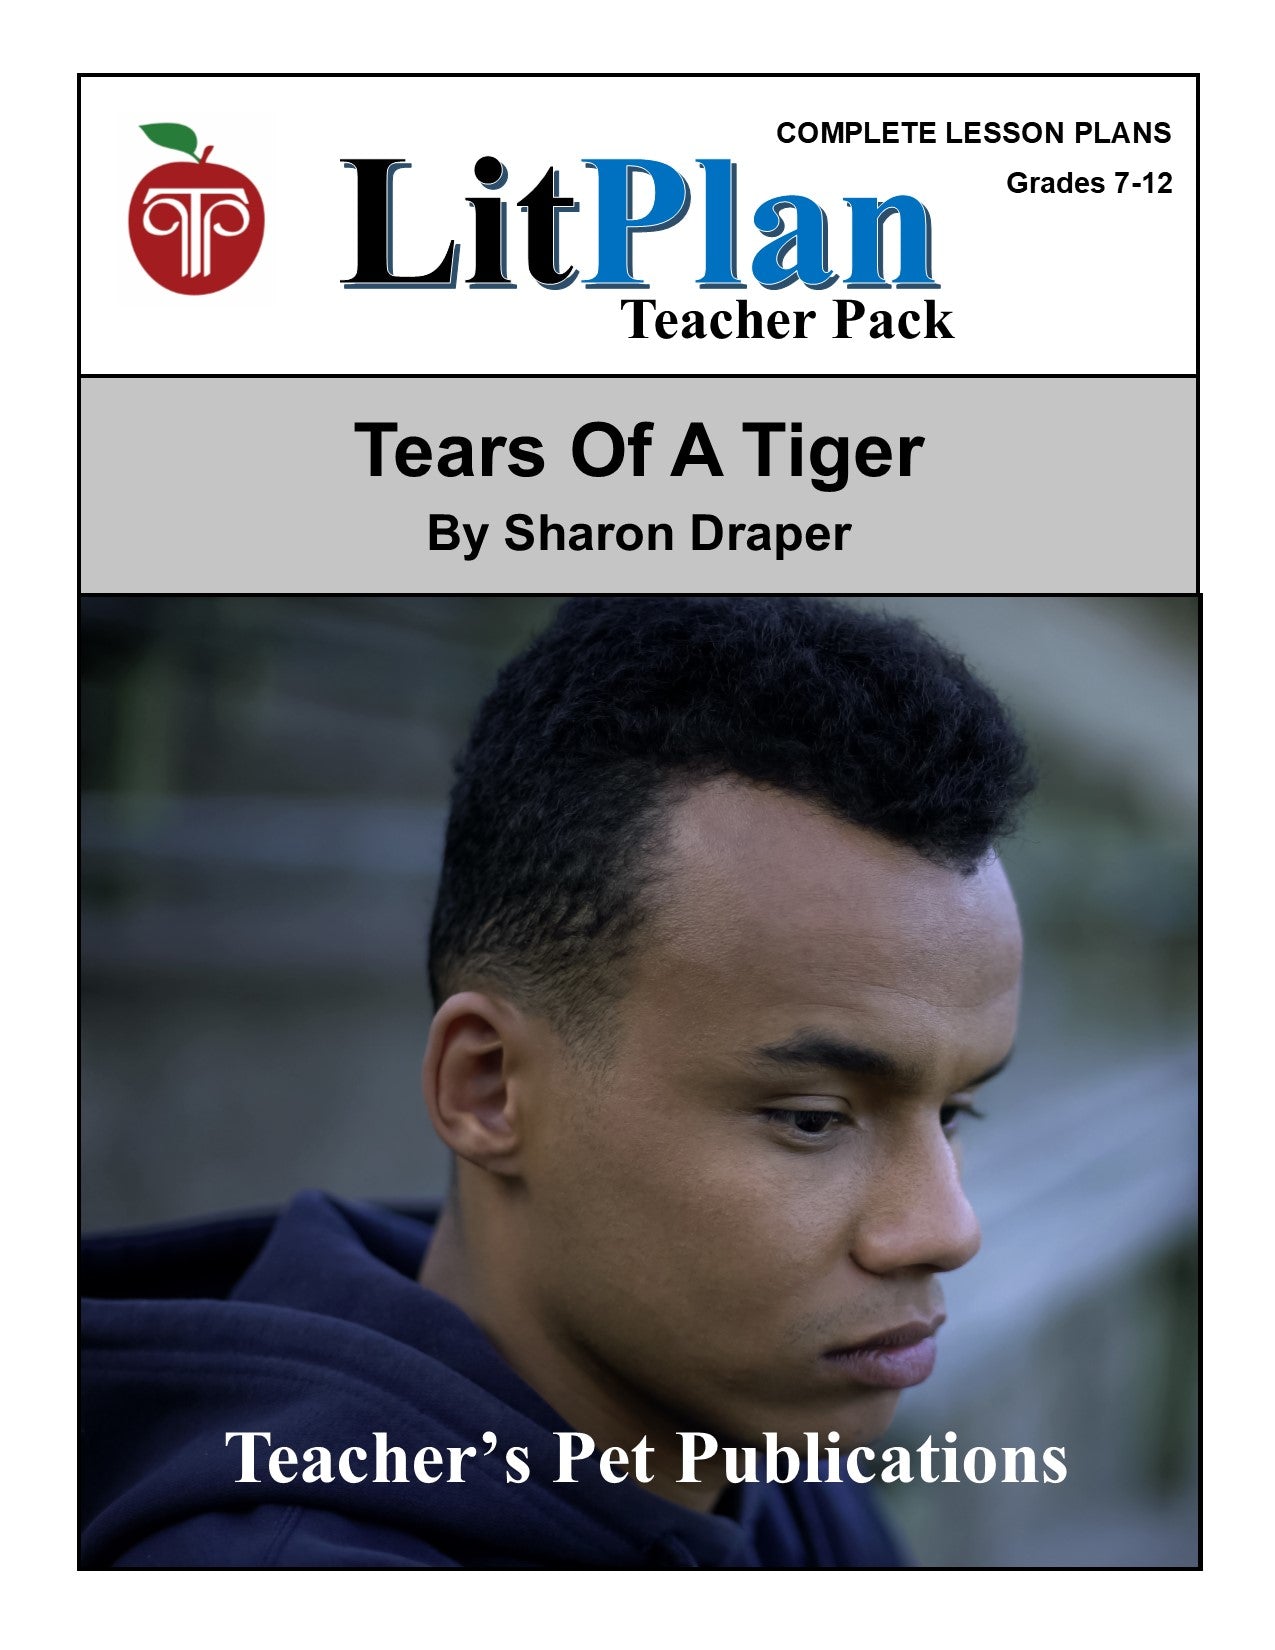 Tears of a Tiger: LitPlan Teacher Pack Grades 7-12